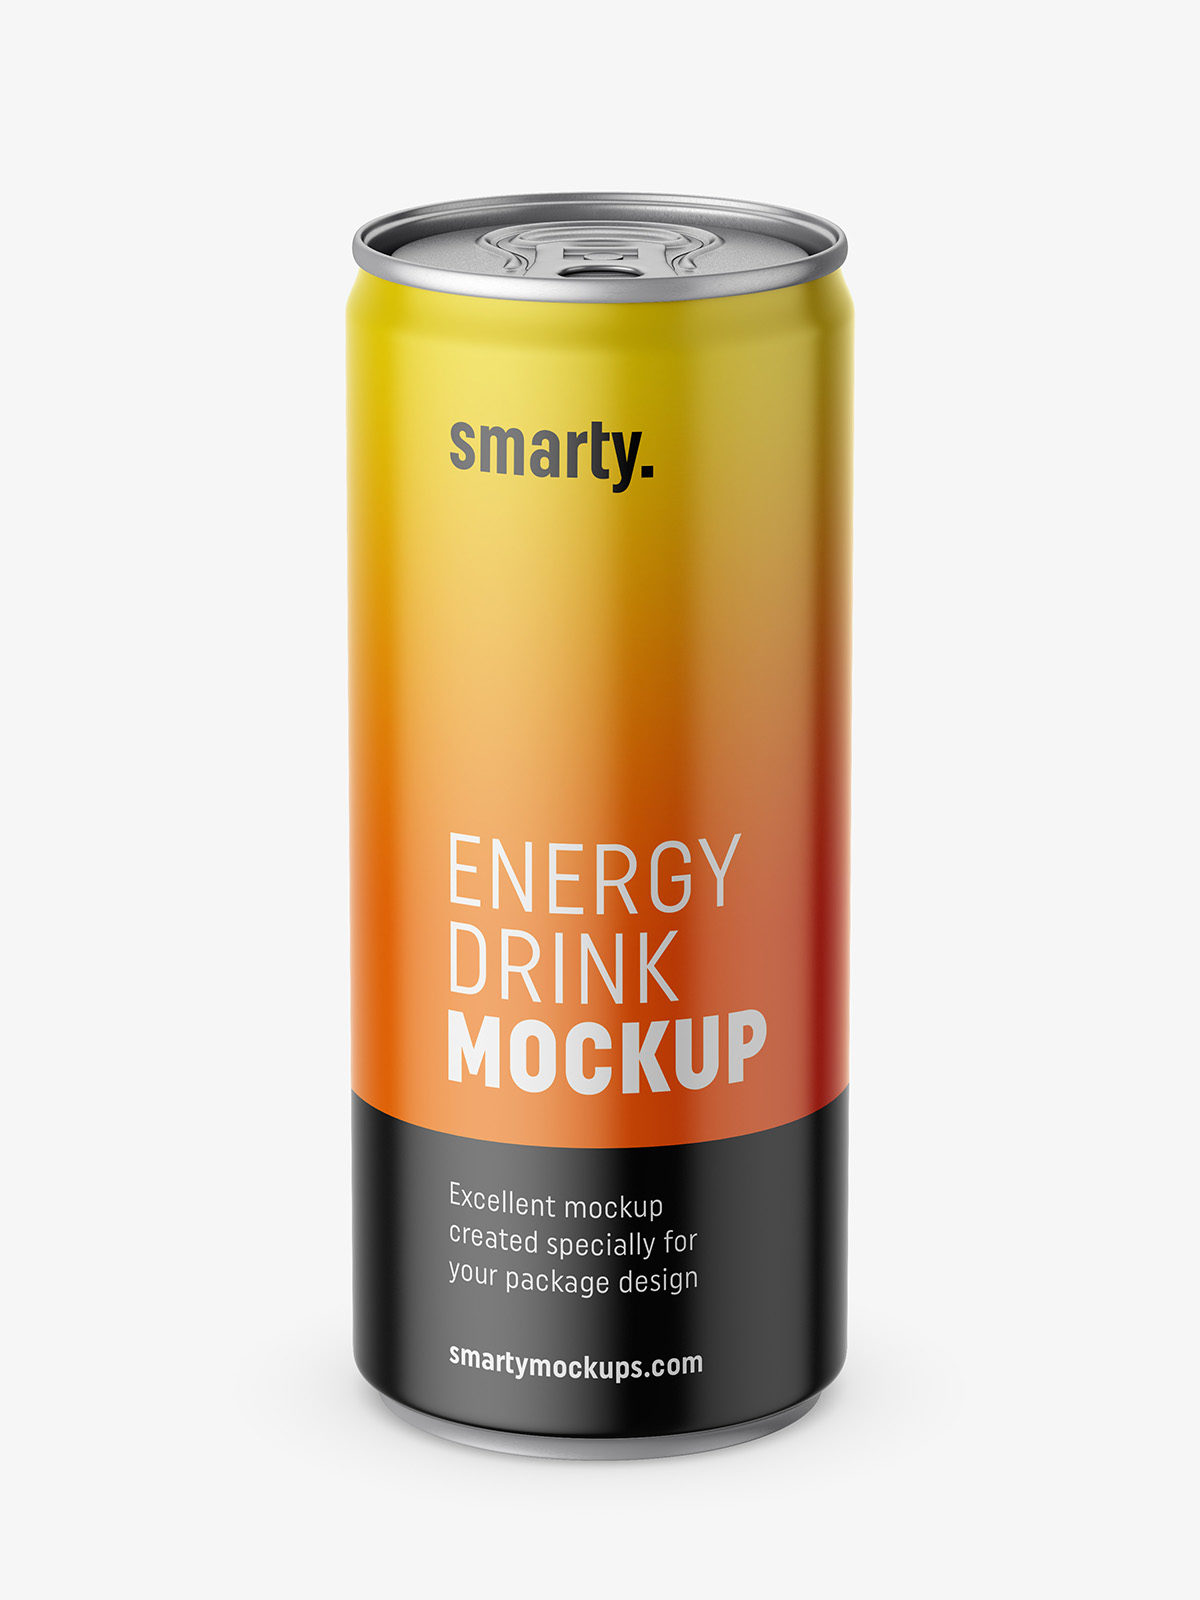 Energy drink mockup - Smarty Mockups